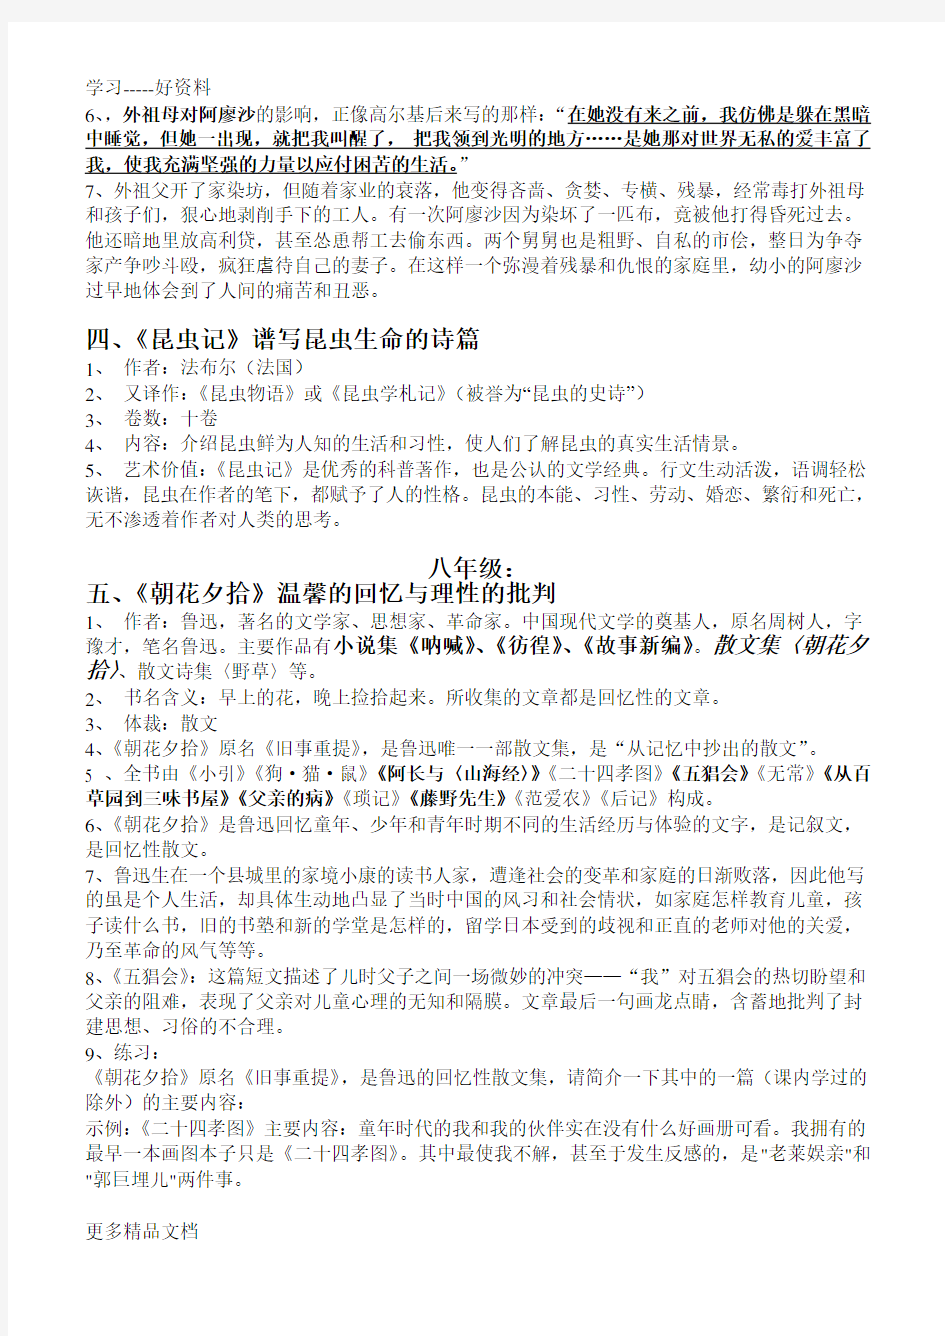 人教版初中语文名著导读整理大全汇编